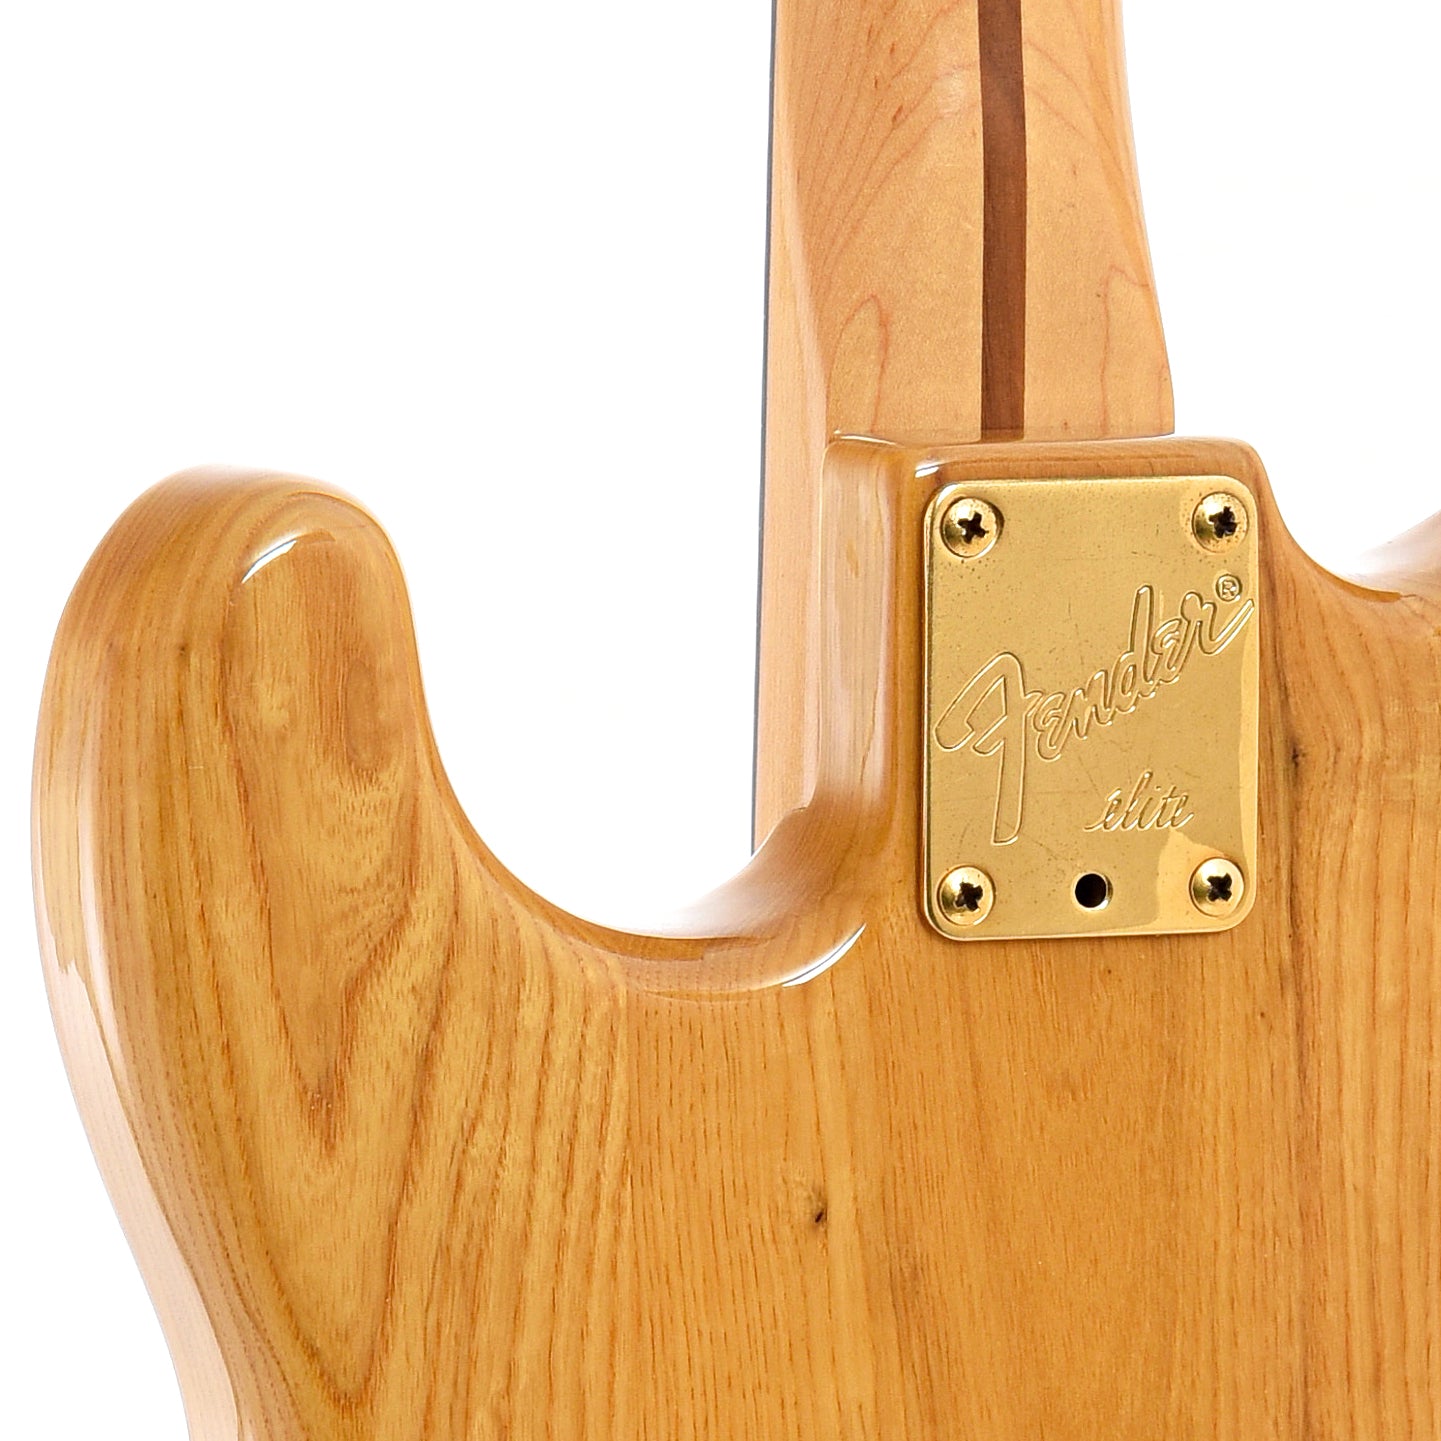 Neck joint of Fender Stratocaster Elite